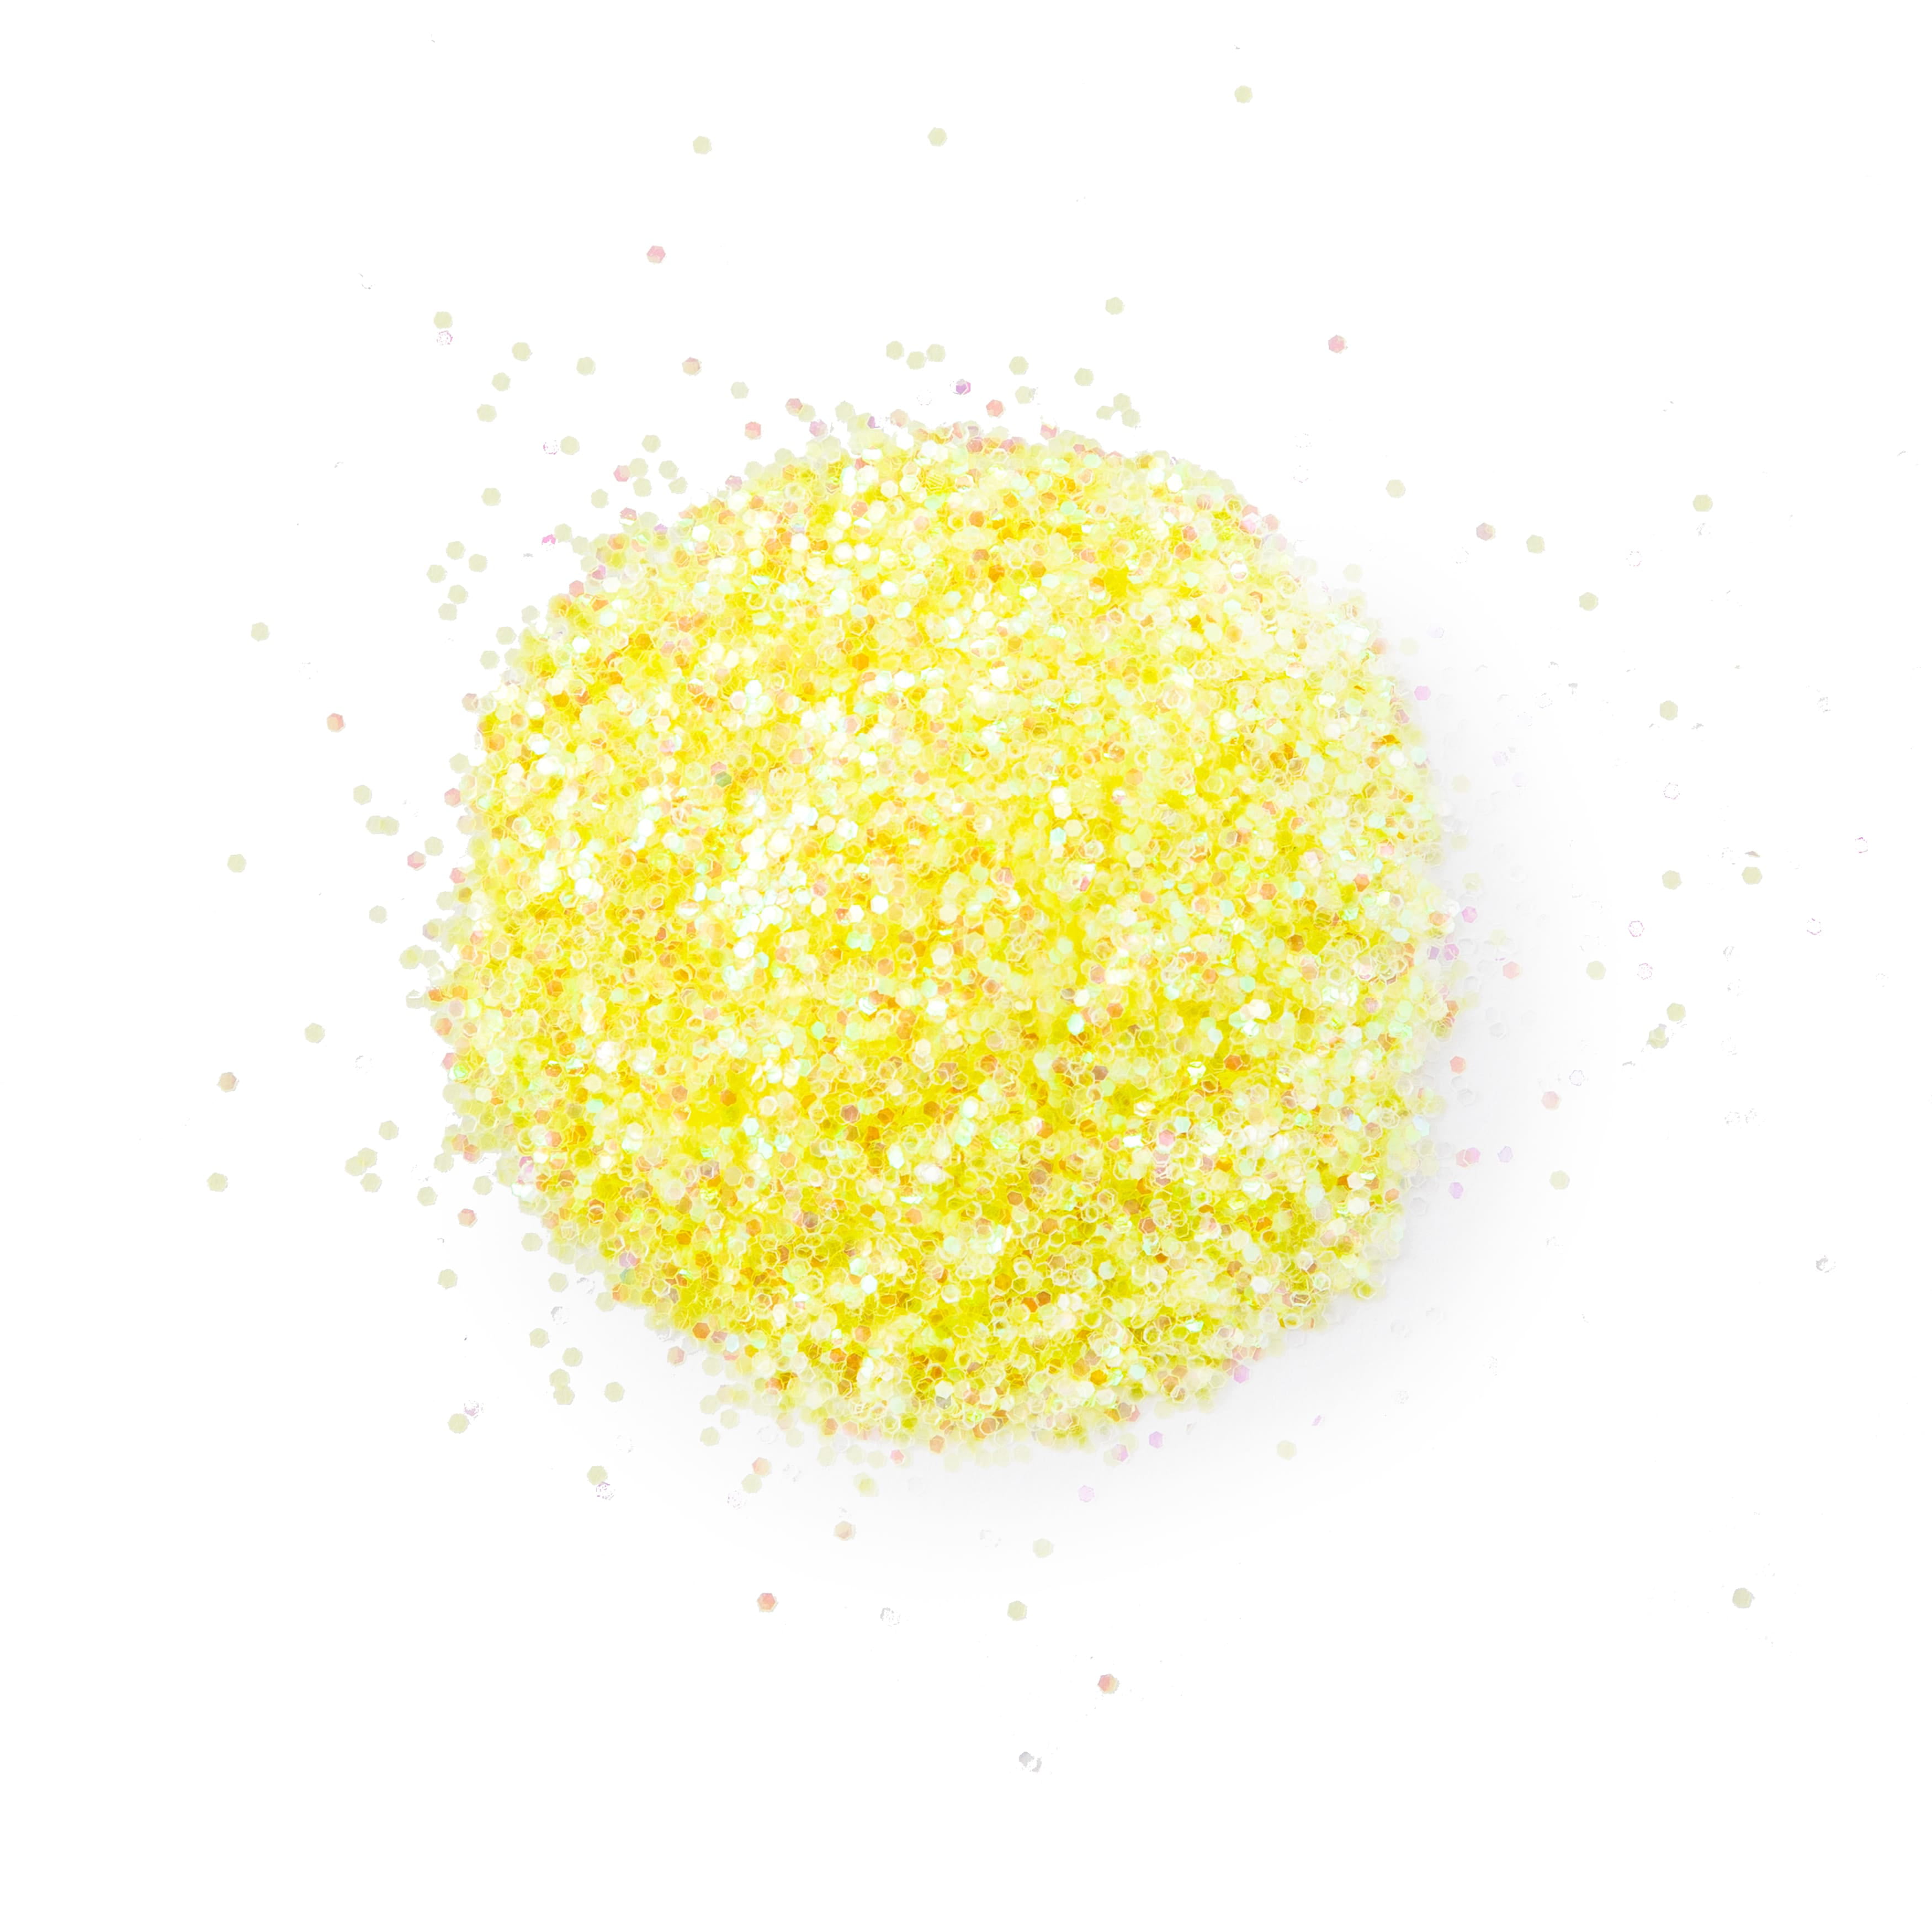 24 Pack: Shaped Glitter by Creatology, Size: 3.25, Yellow